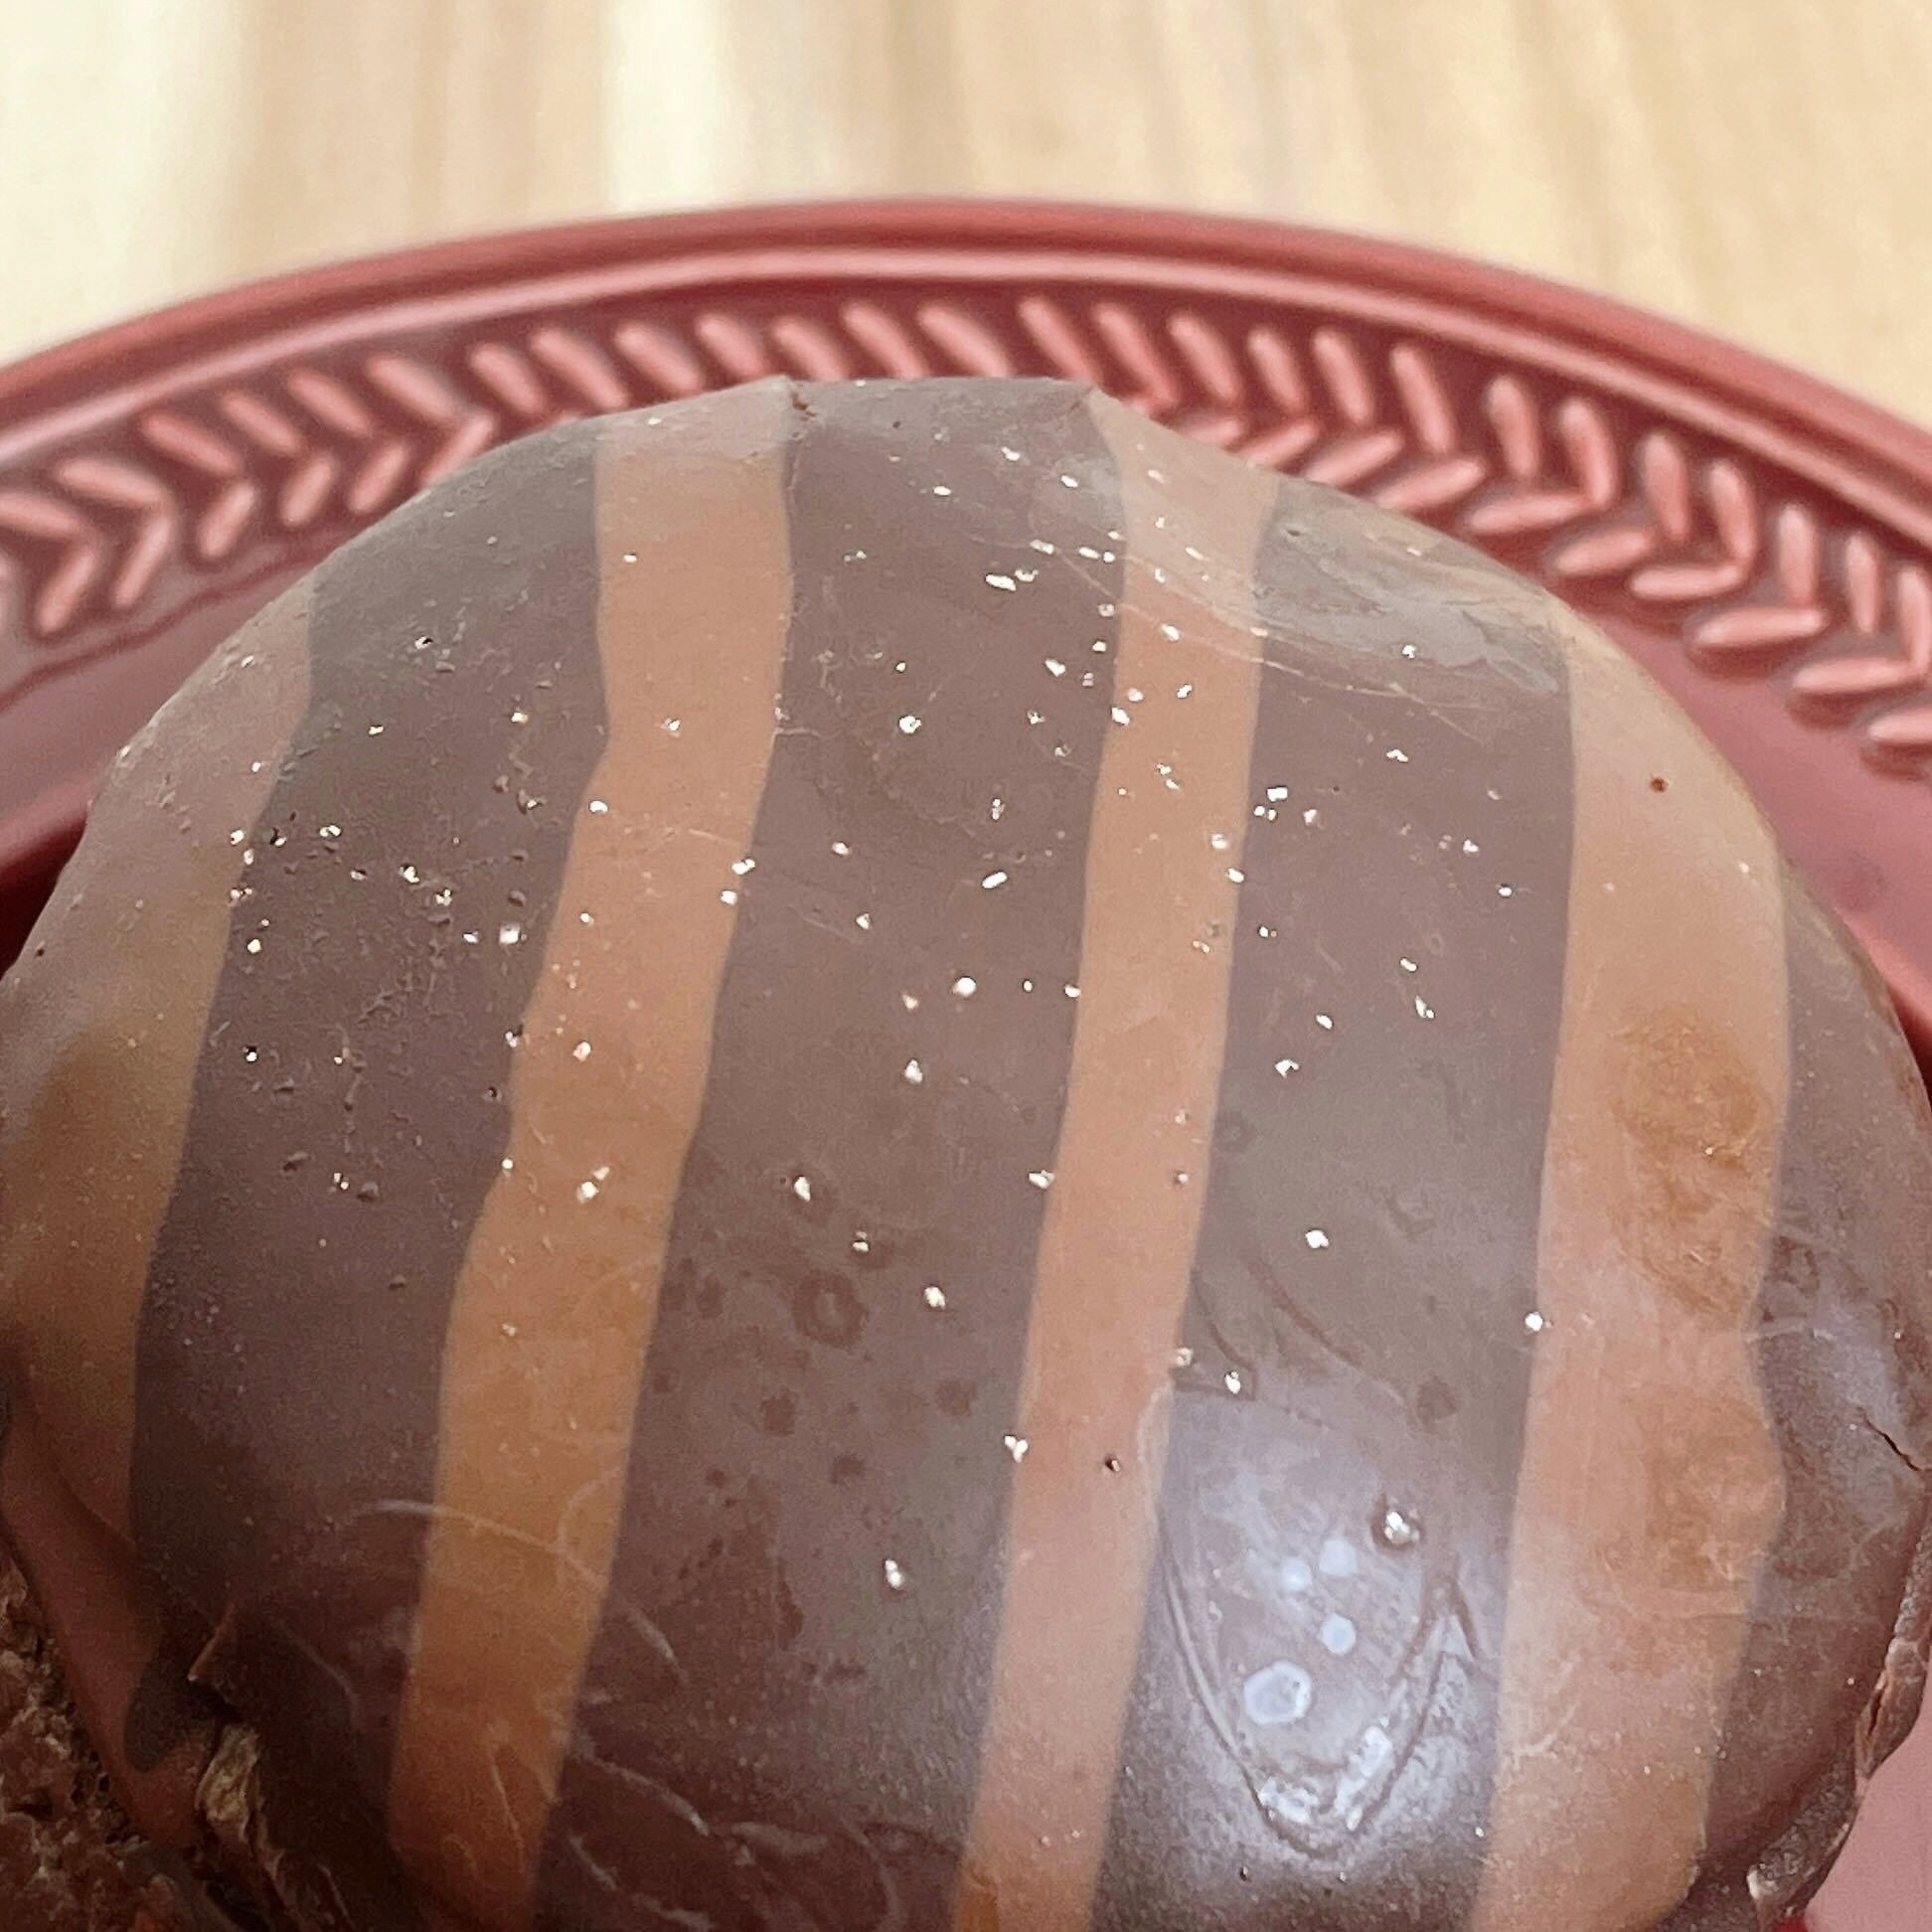 LAWSON（ローソン）のオススメのパン「GODIVA ショコラドーム」